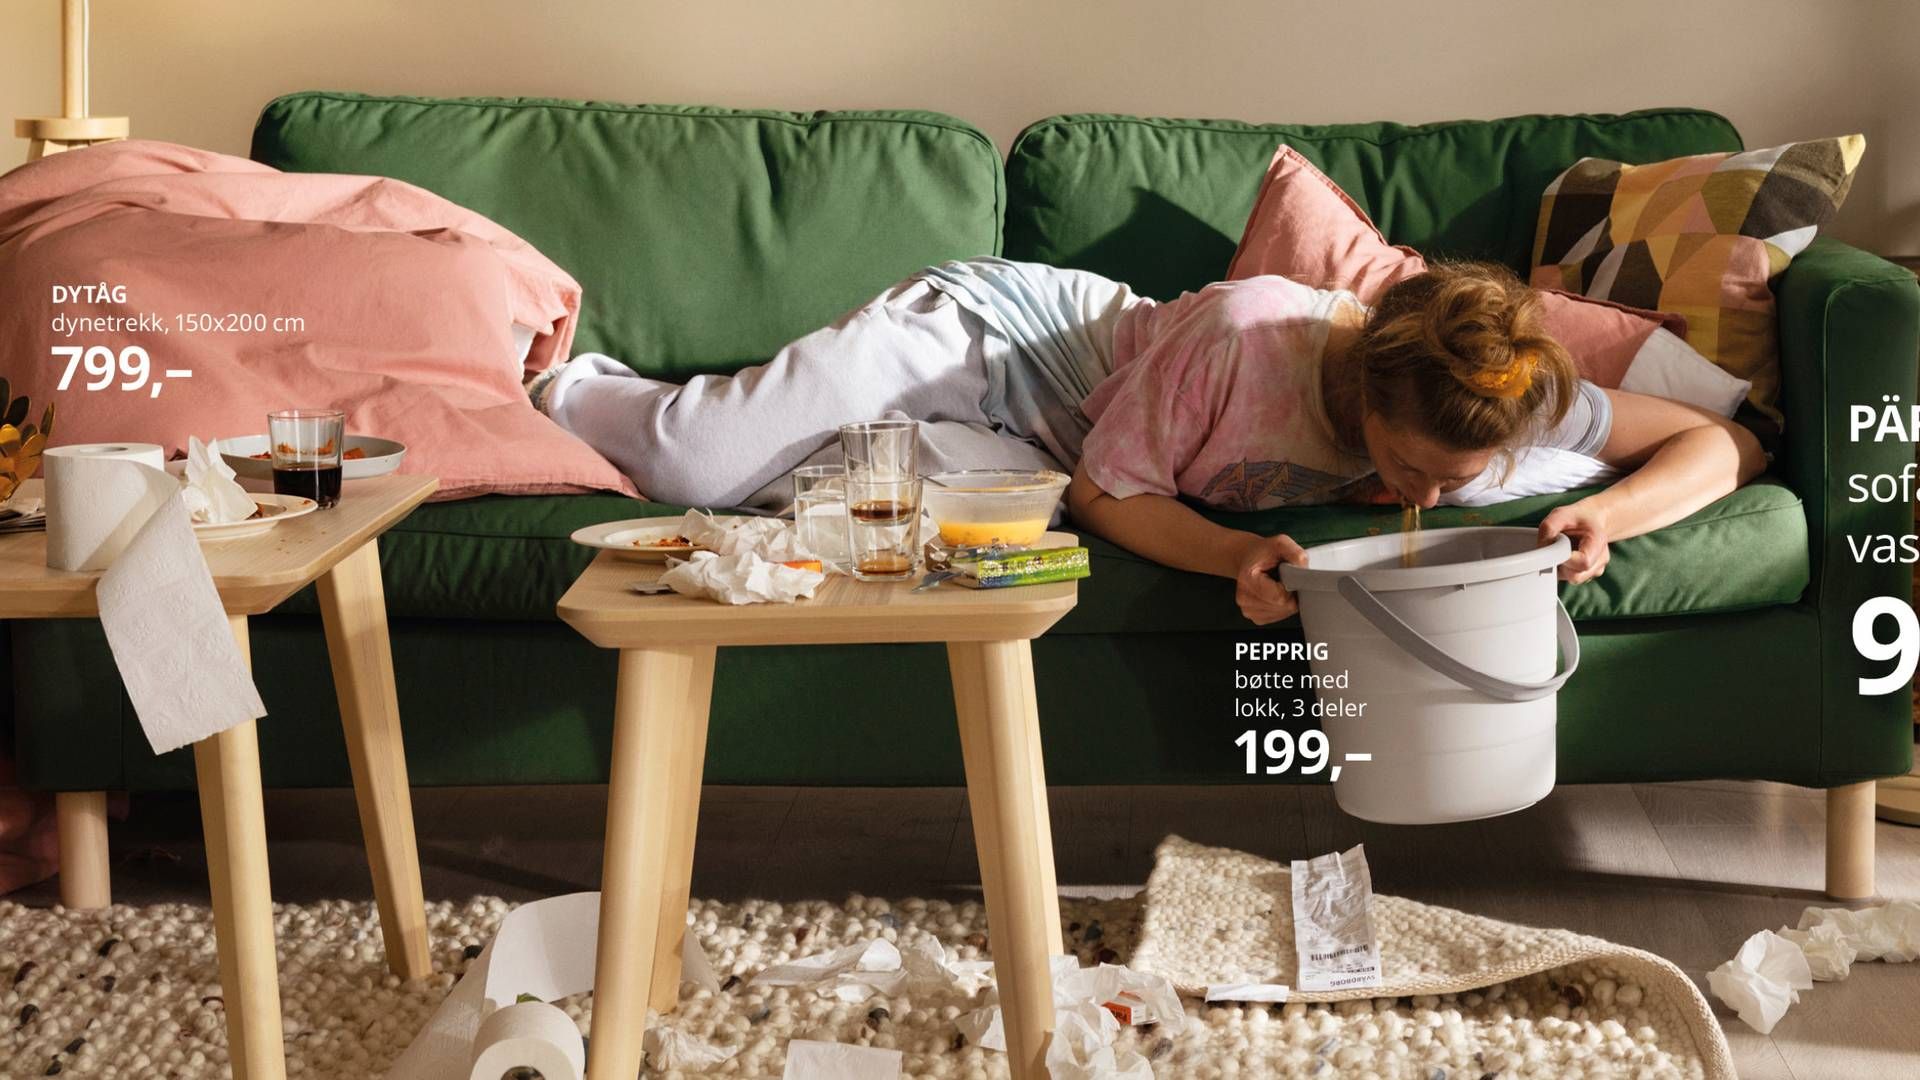 SYK FILM: Reklamefilmen «Magevirus» starter med en scene der et barn sitter og leker alene i pen og ryddig stue, men avsluttes med bilder av en kvinner rammet av omgangssyke. | Foto: Try / Ikea